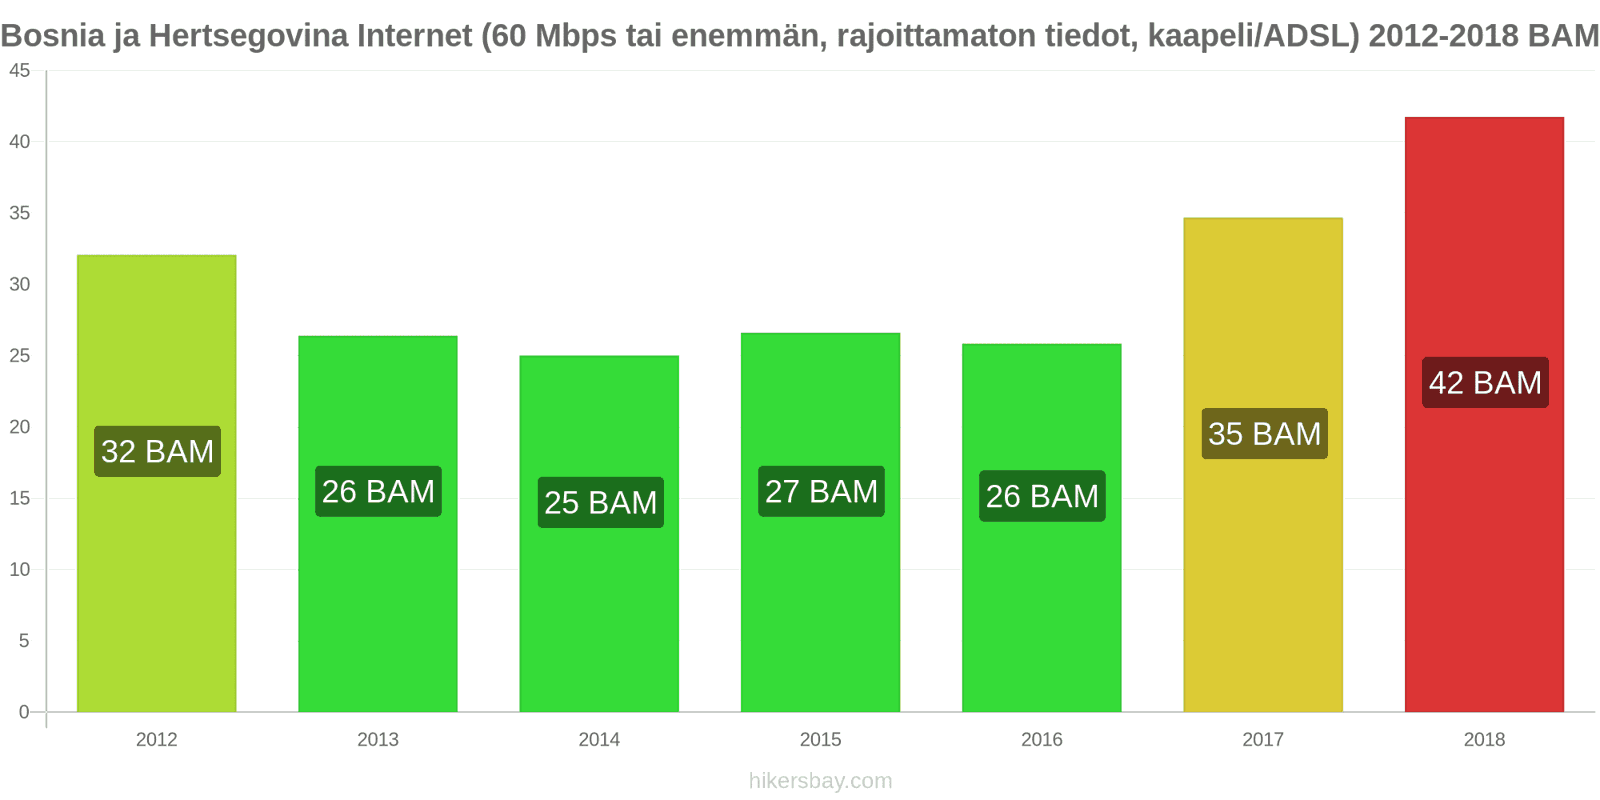 Bosnia ja Hertsegovina hintojen muutokset Internet (60 Mbps tai enemmän, rajattomat tiedot, kaapeli/ADSL) hikersbay.com